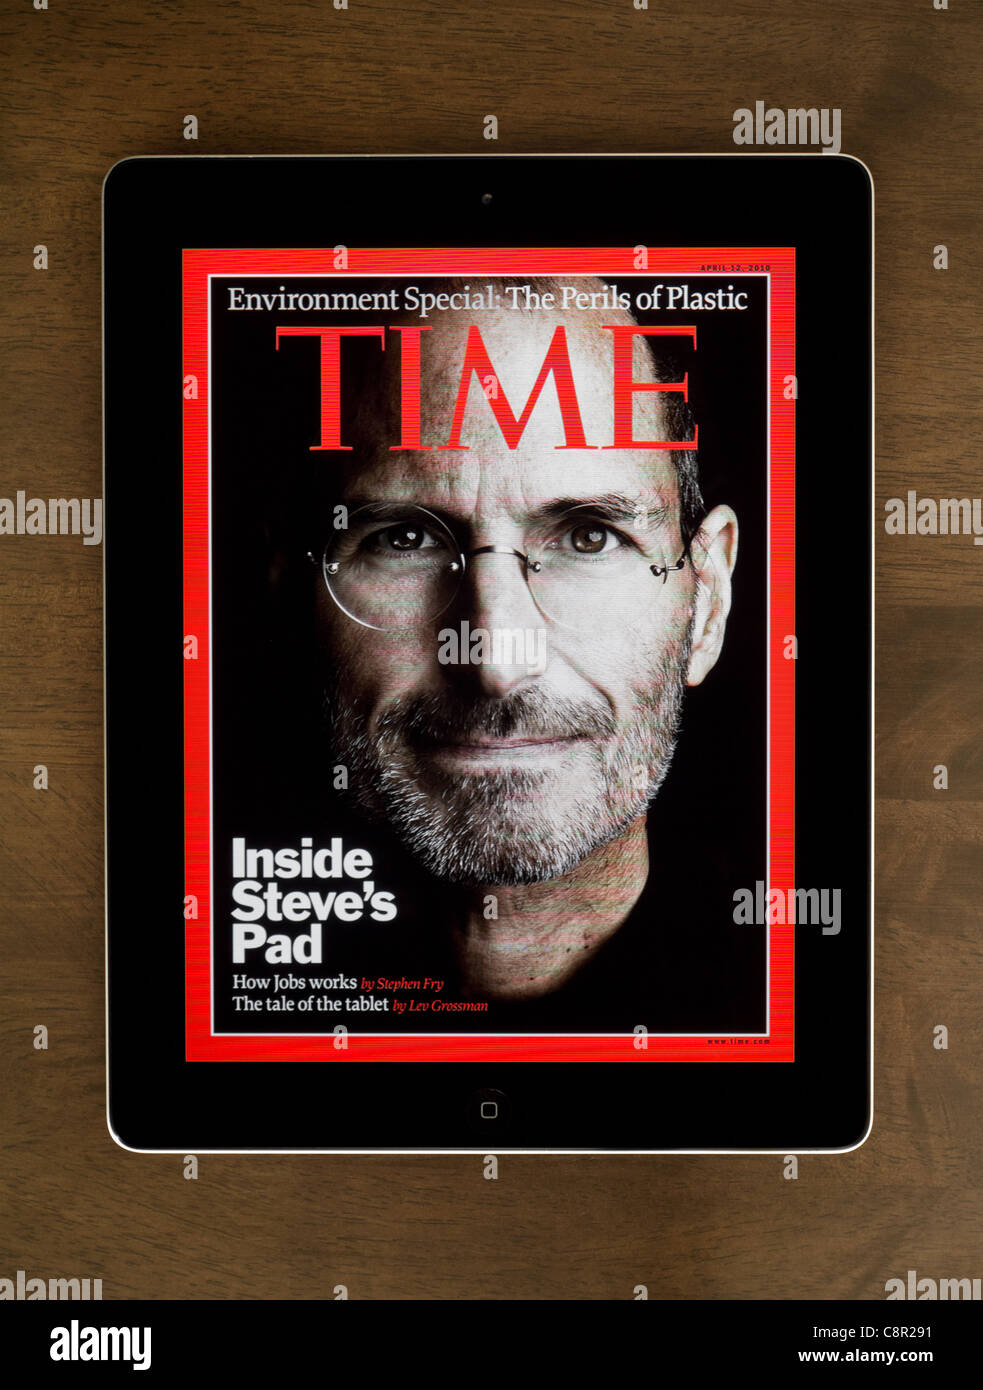 Steve Jobs, fondateur d'Apple Computers, posté sur la couverture du magazine Time pour le 12 avril 20 Banque D'Images